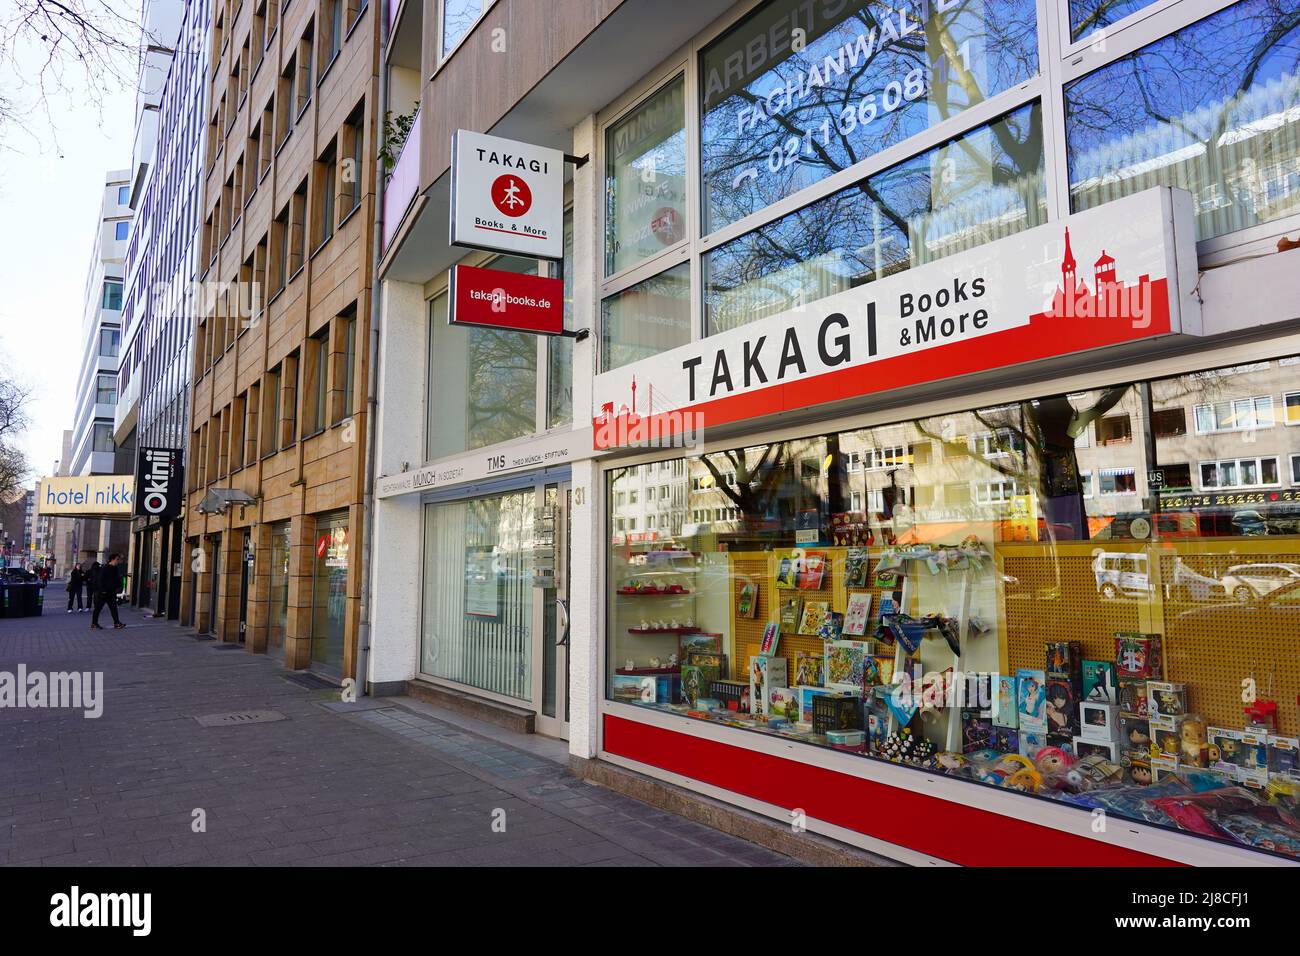 La librería japonesa 'Takagi' en el barrio japonés de Immermannstrasse en Düsseldorf/Alemania. Foto de stock